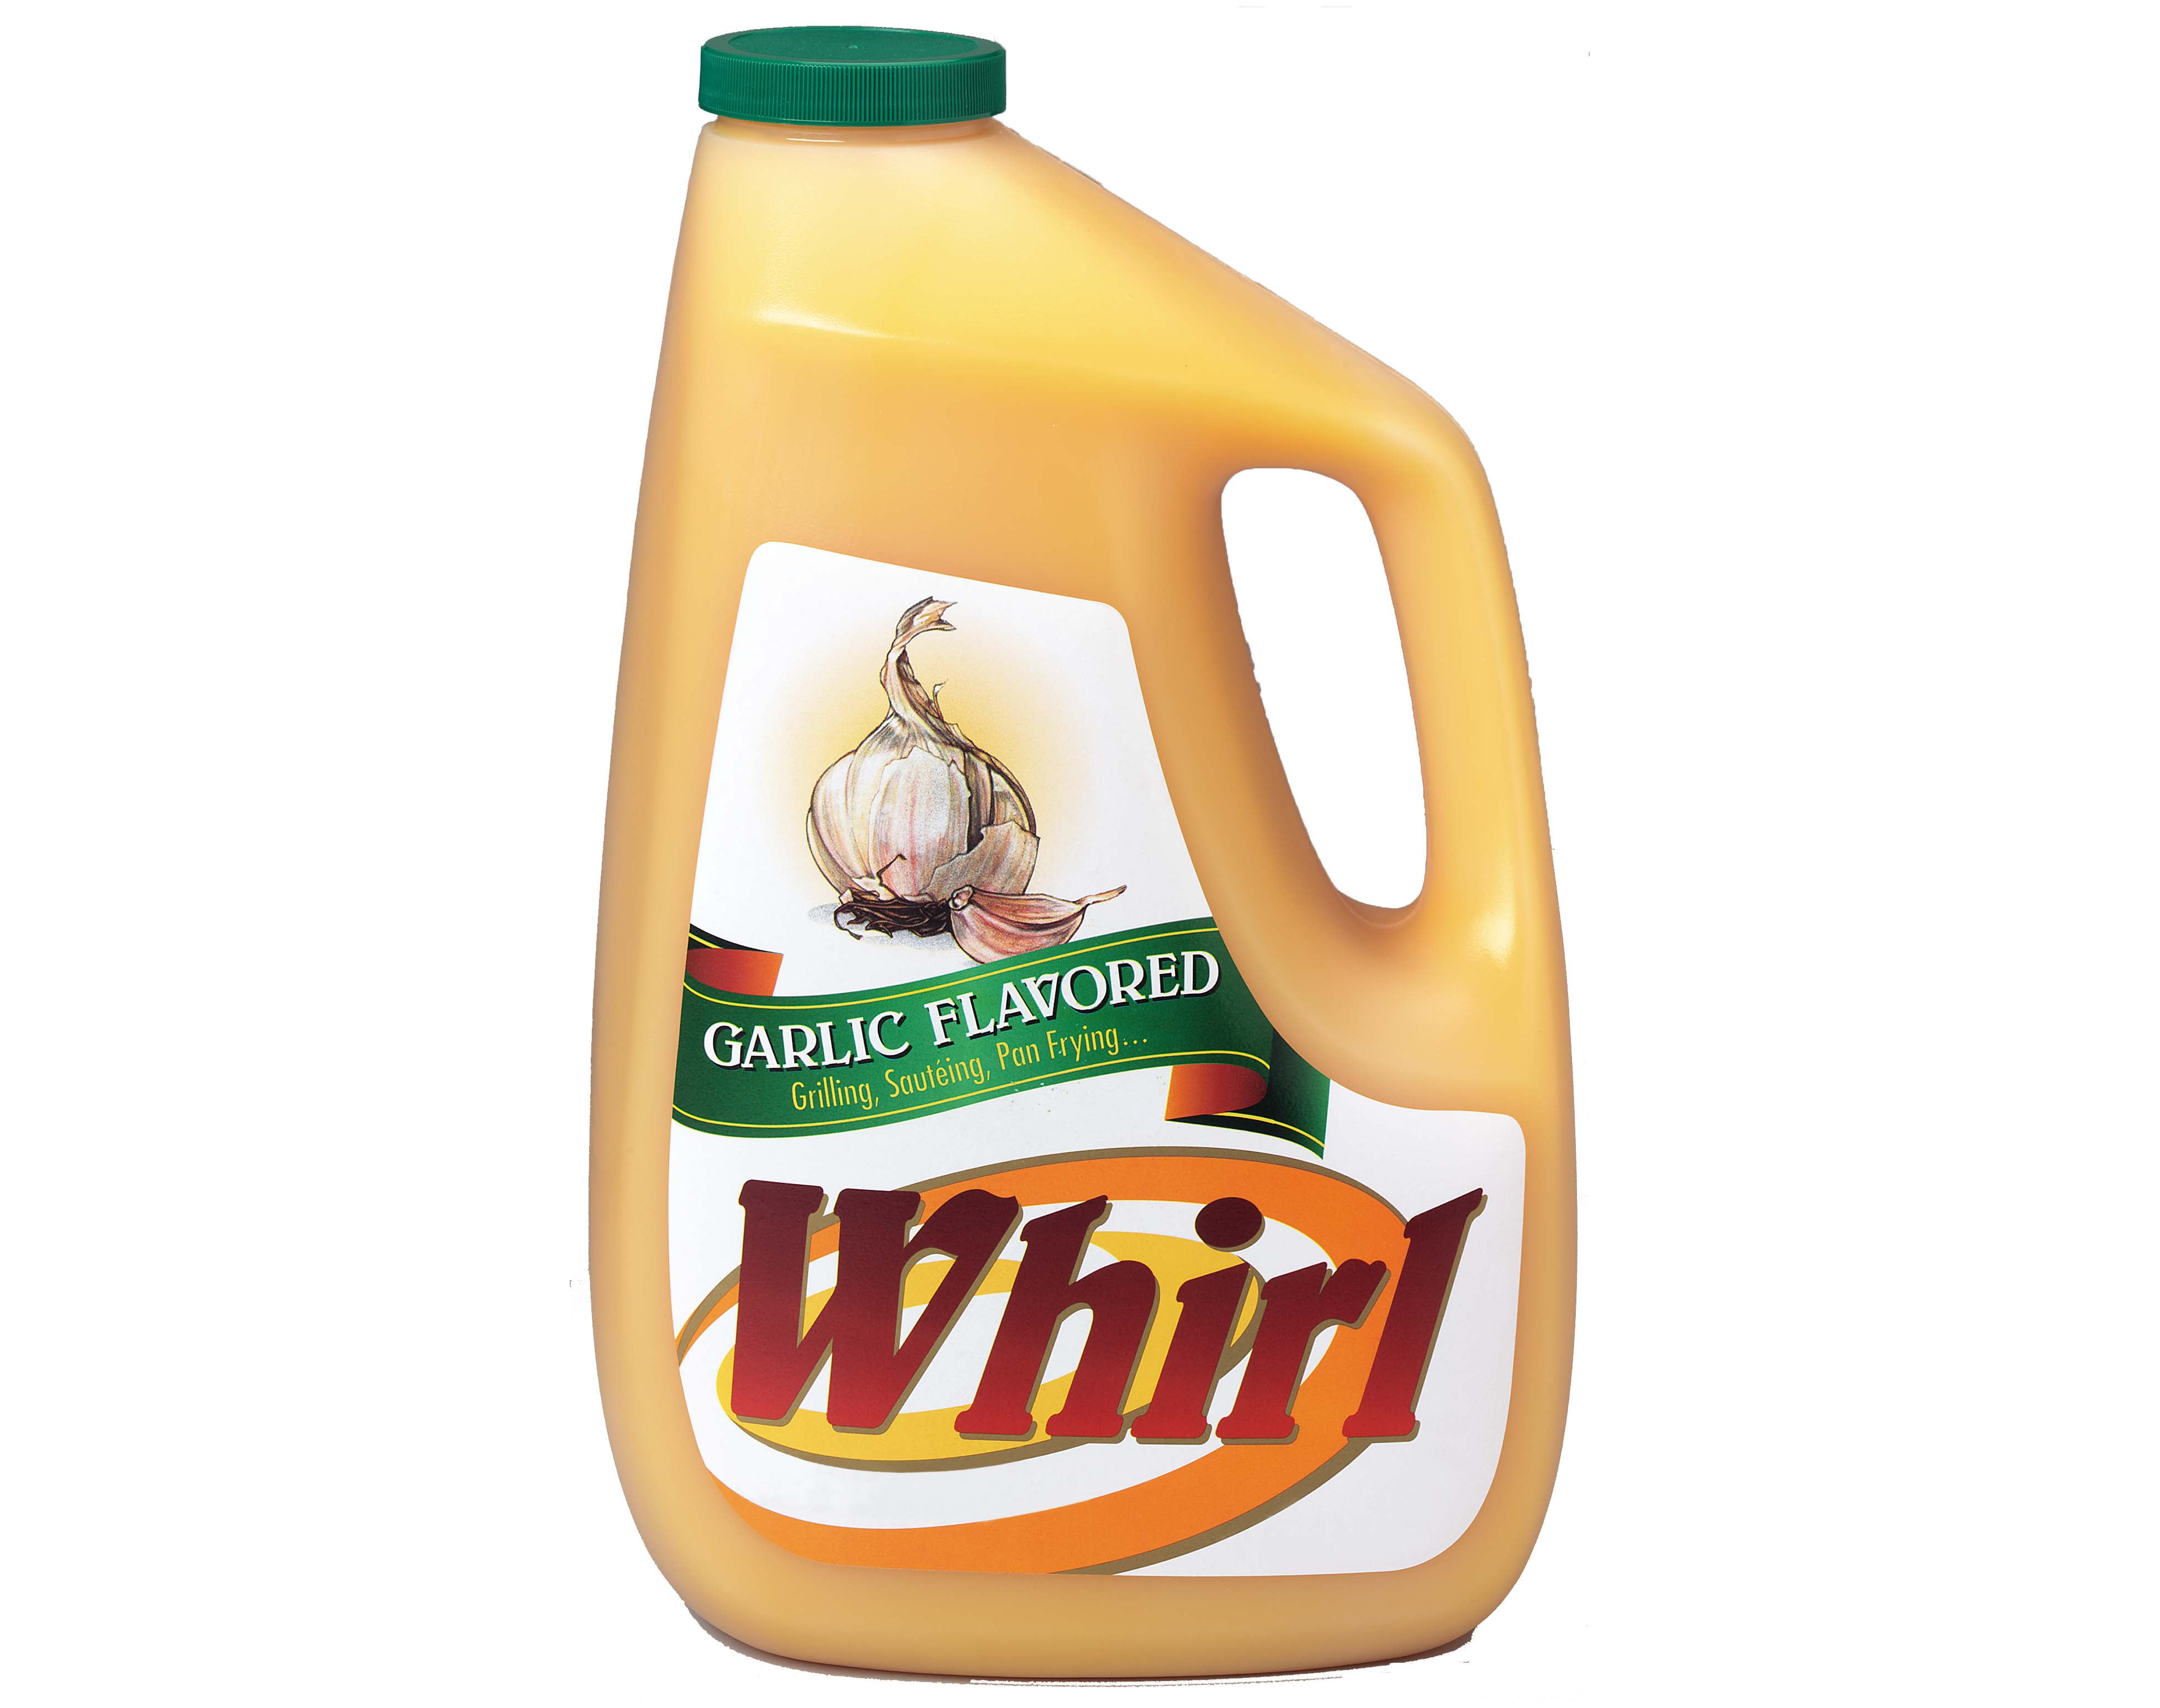 Whirl Garlic Butter Flavored Oil, 1 Gallon Jug, 3 per Case